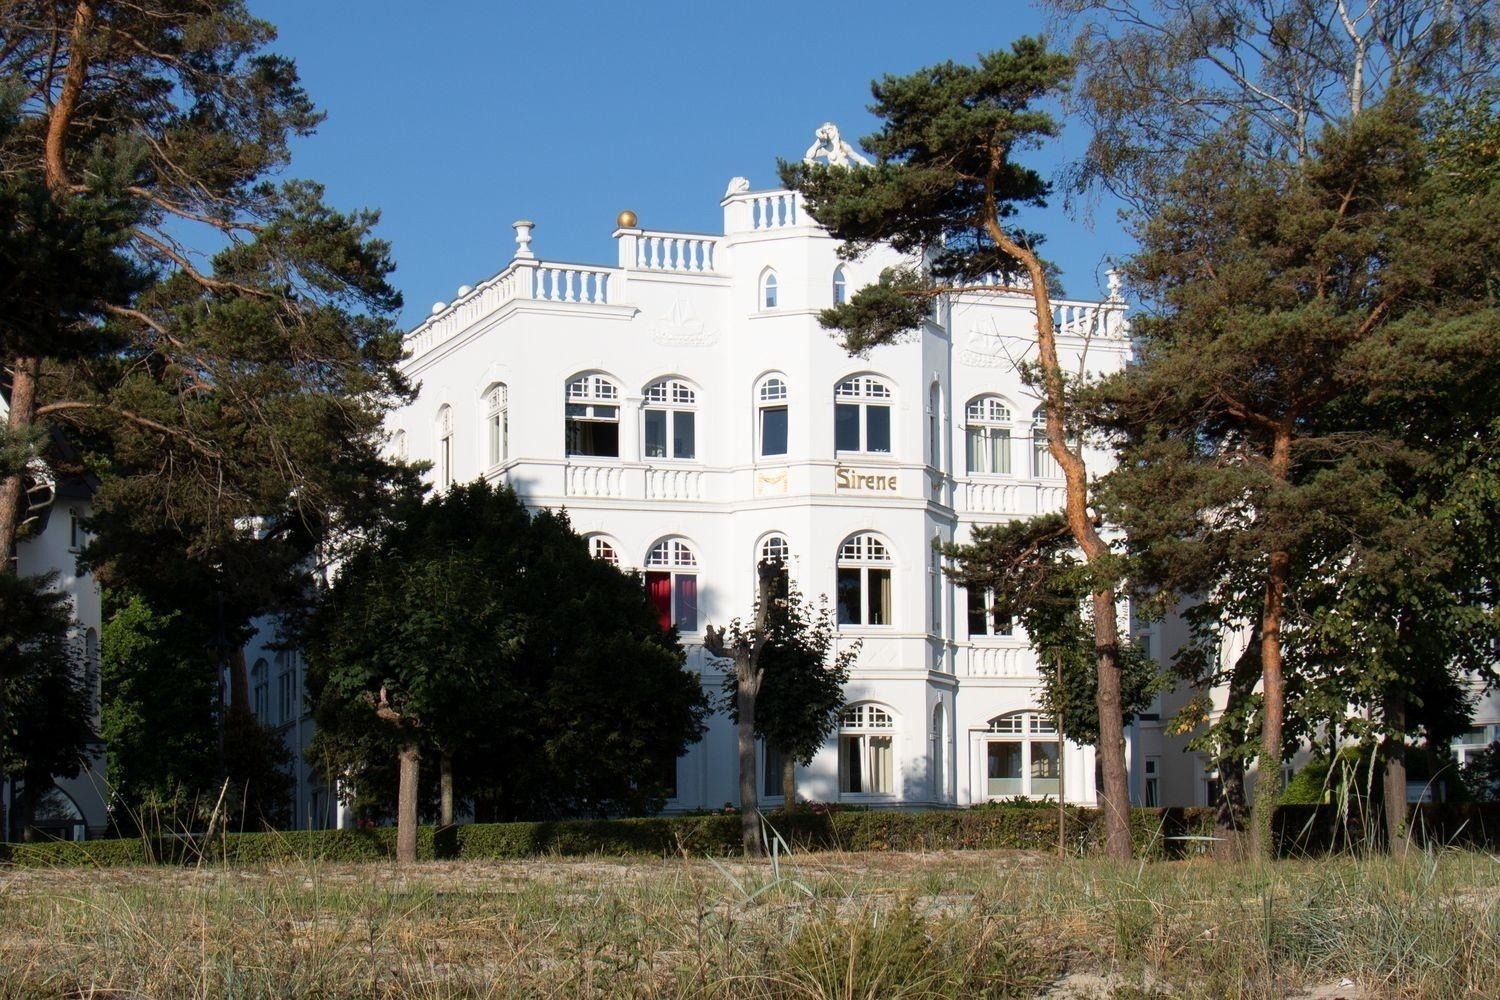 Villa Sirene 2-Raum Apartment, ca. 54 qm Ferienwohnung in Binz Ostseebad